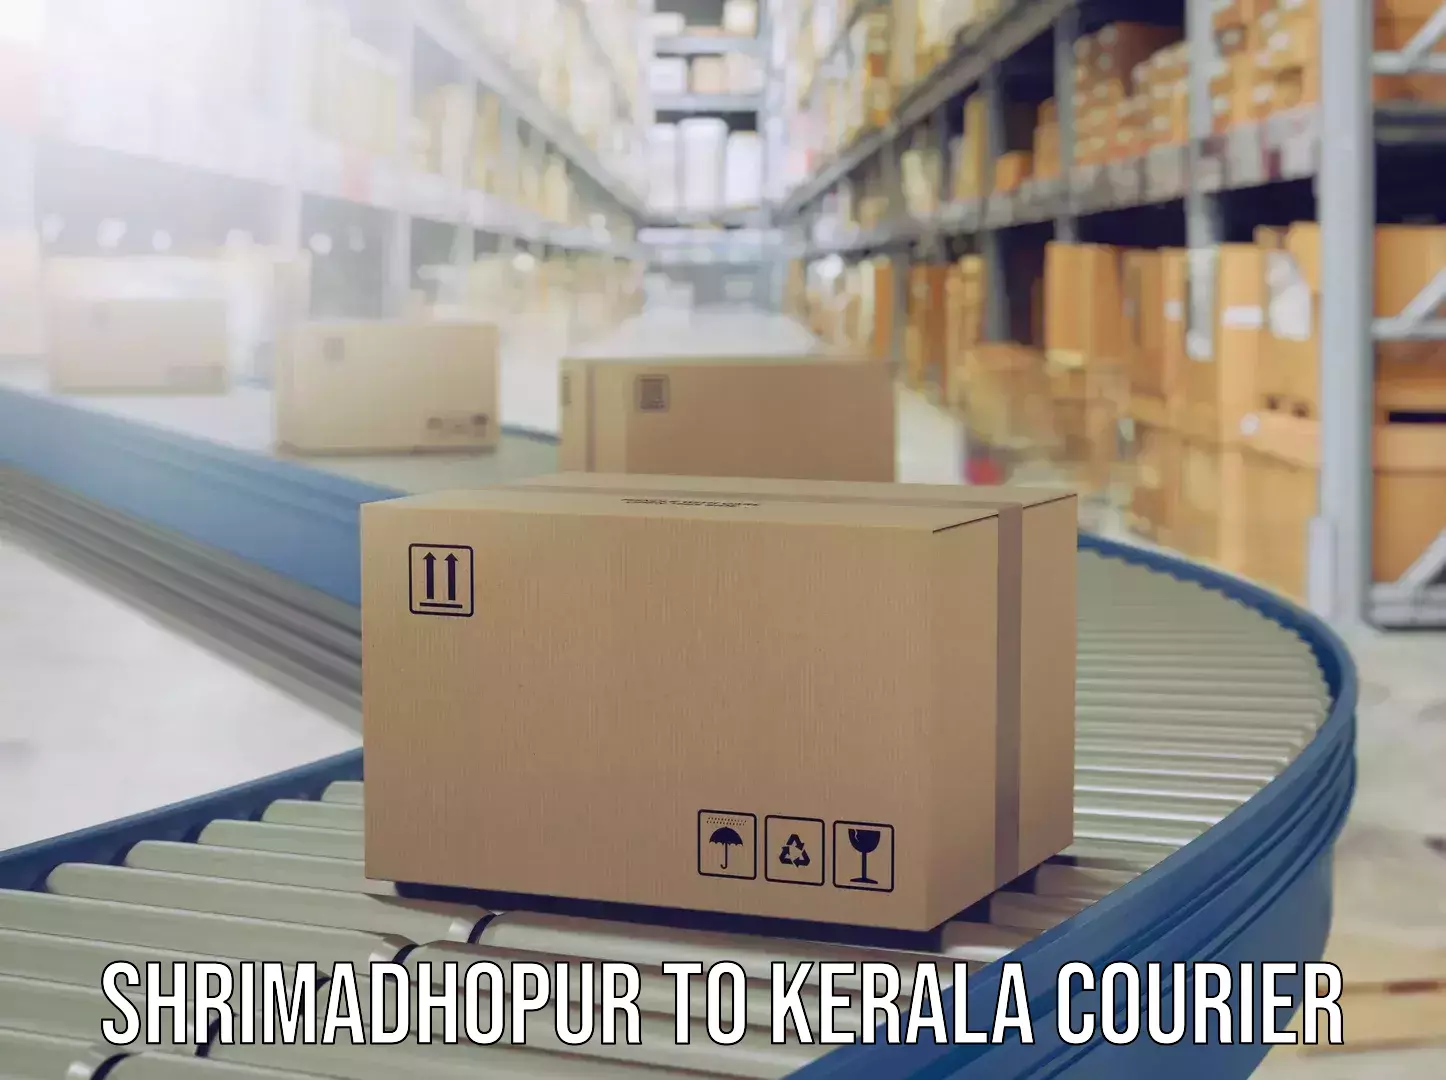 Luggage transit service Shrimadhopur to Kerala